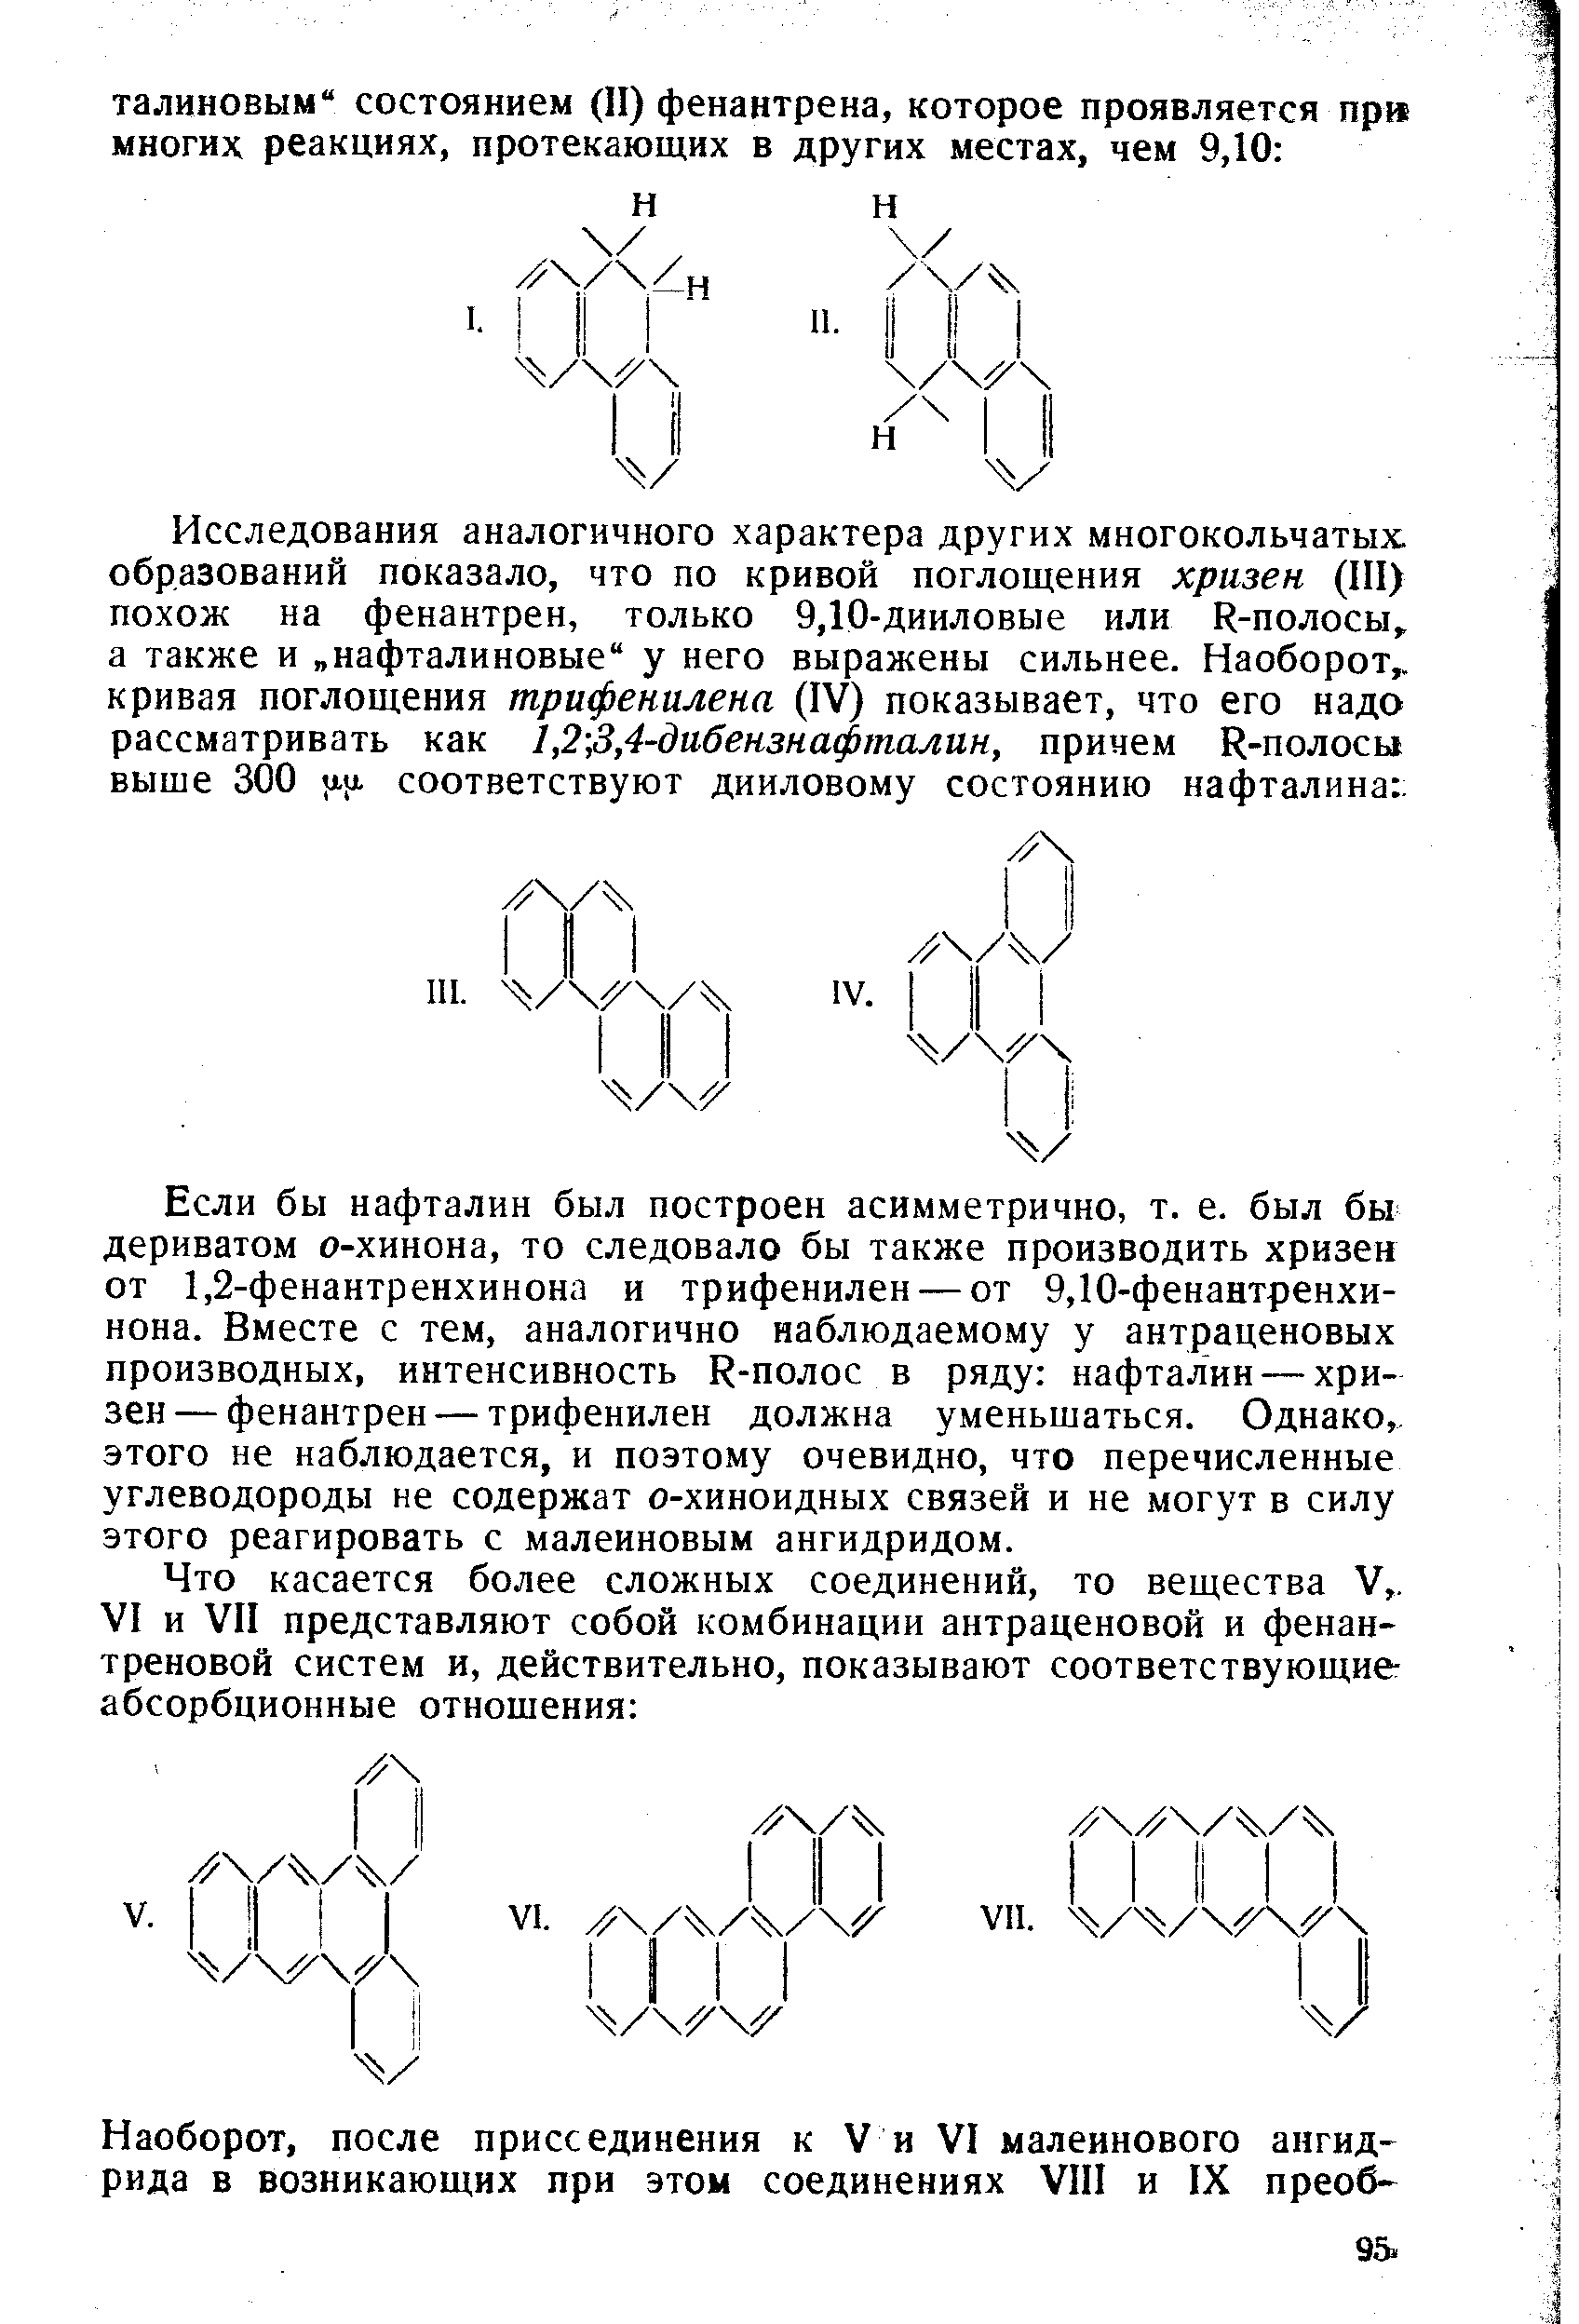 Если бы нафталин был построен асимметрично, т. е. был бы дериватом о-хинона, то следовало бы также производить хризен от 1,2-фенантренхинона и трифенилен — от 9,10-фенантренхи-нона. Вместе с тем, аналогично наблюдаемому у антраценовых производных, интенсивность К-полос в ряду нафталин — хризен— фенантрен — трифенилен должна уменьшаться. Однако,, этого не наблюдается, и поэтому очевидно, что перечисленные углеводороды не содержат о-хиноидных связей и не могут в силу этого реагировать с малеиновым ангидридом.